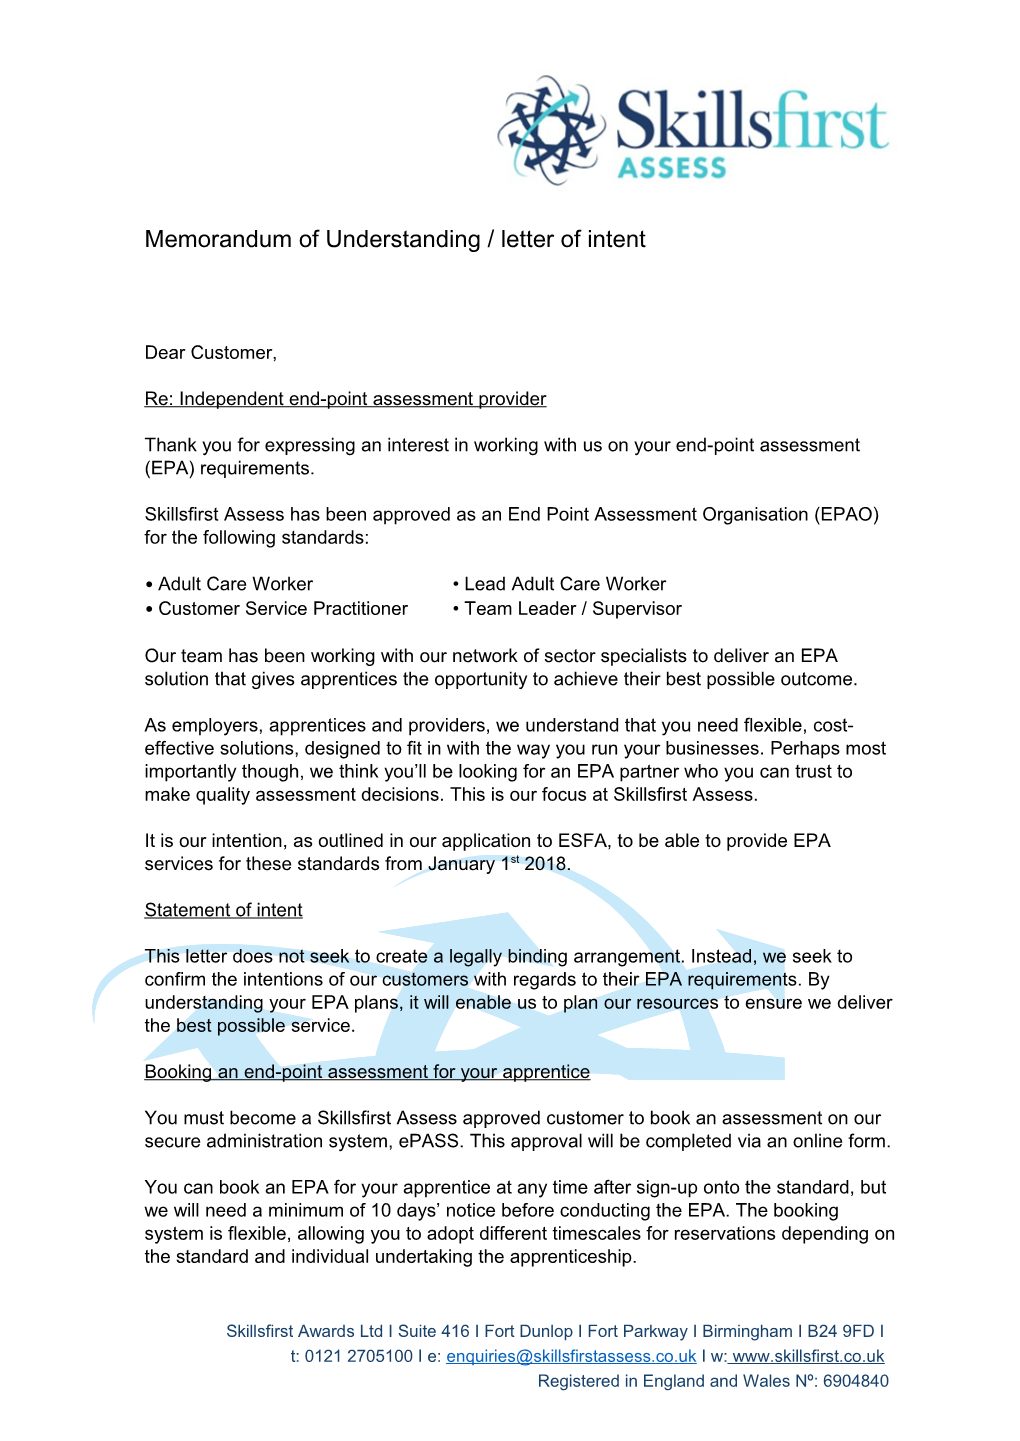 Memorandum of Understanding / Letter of Intent